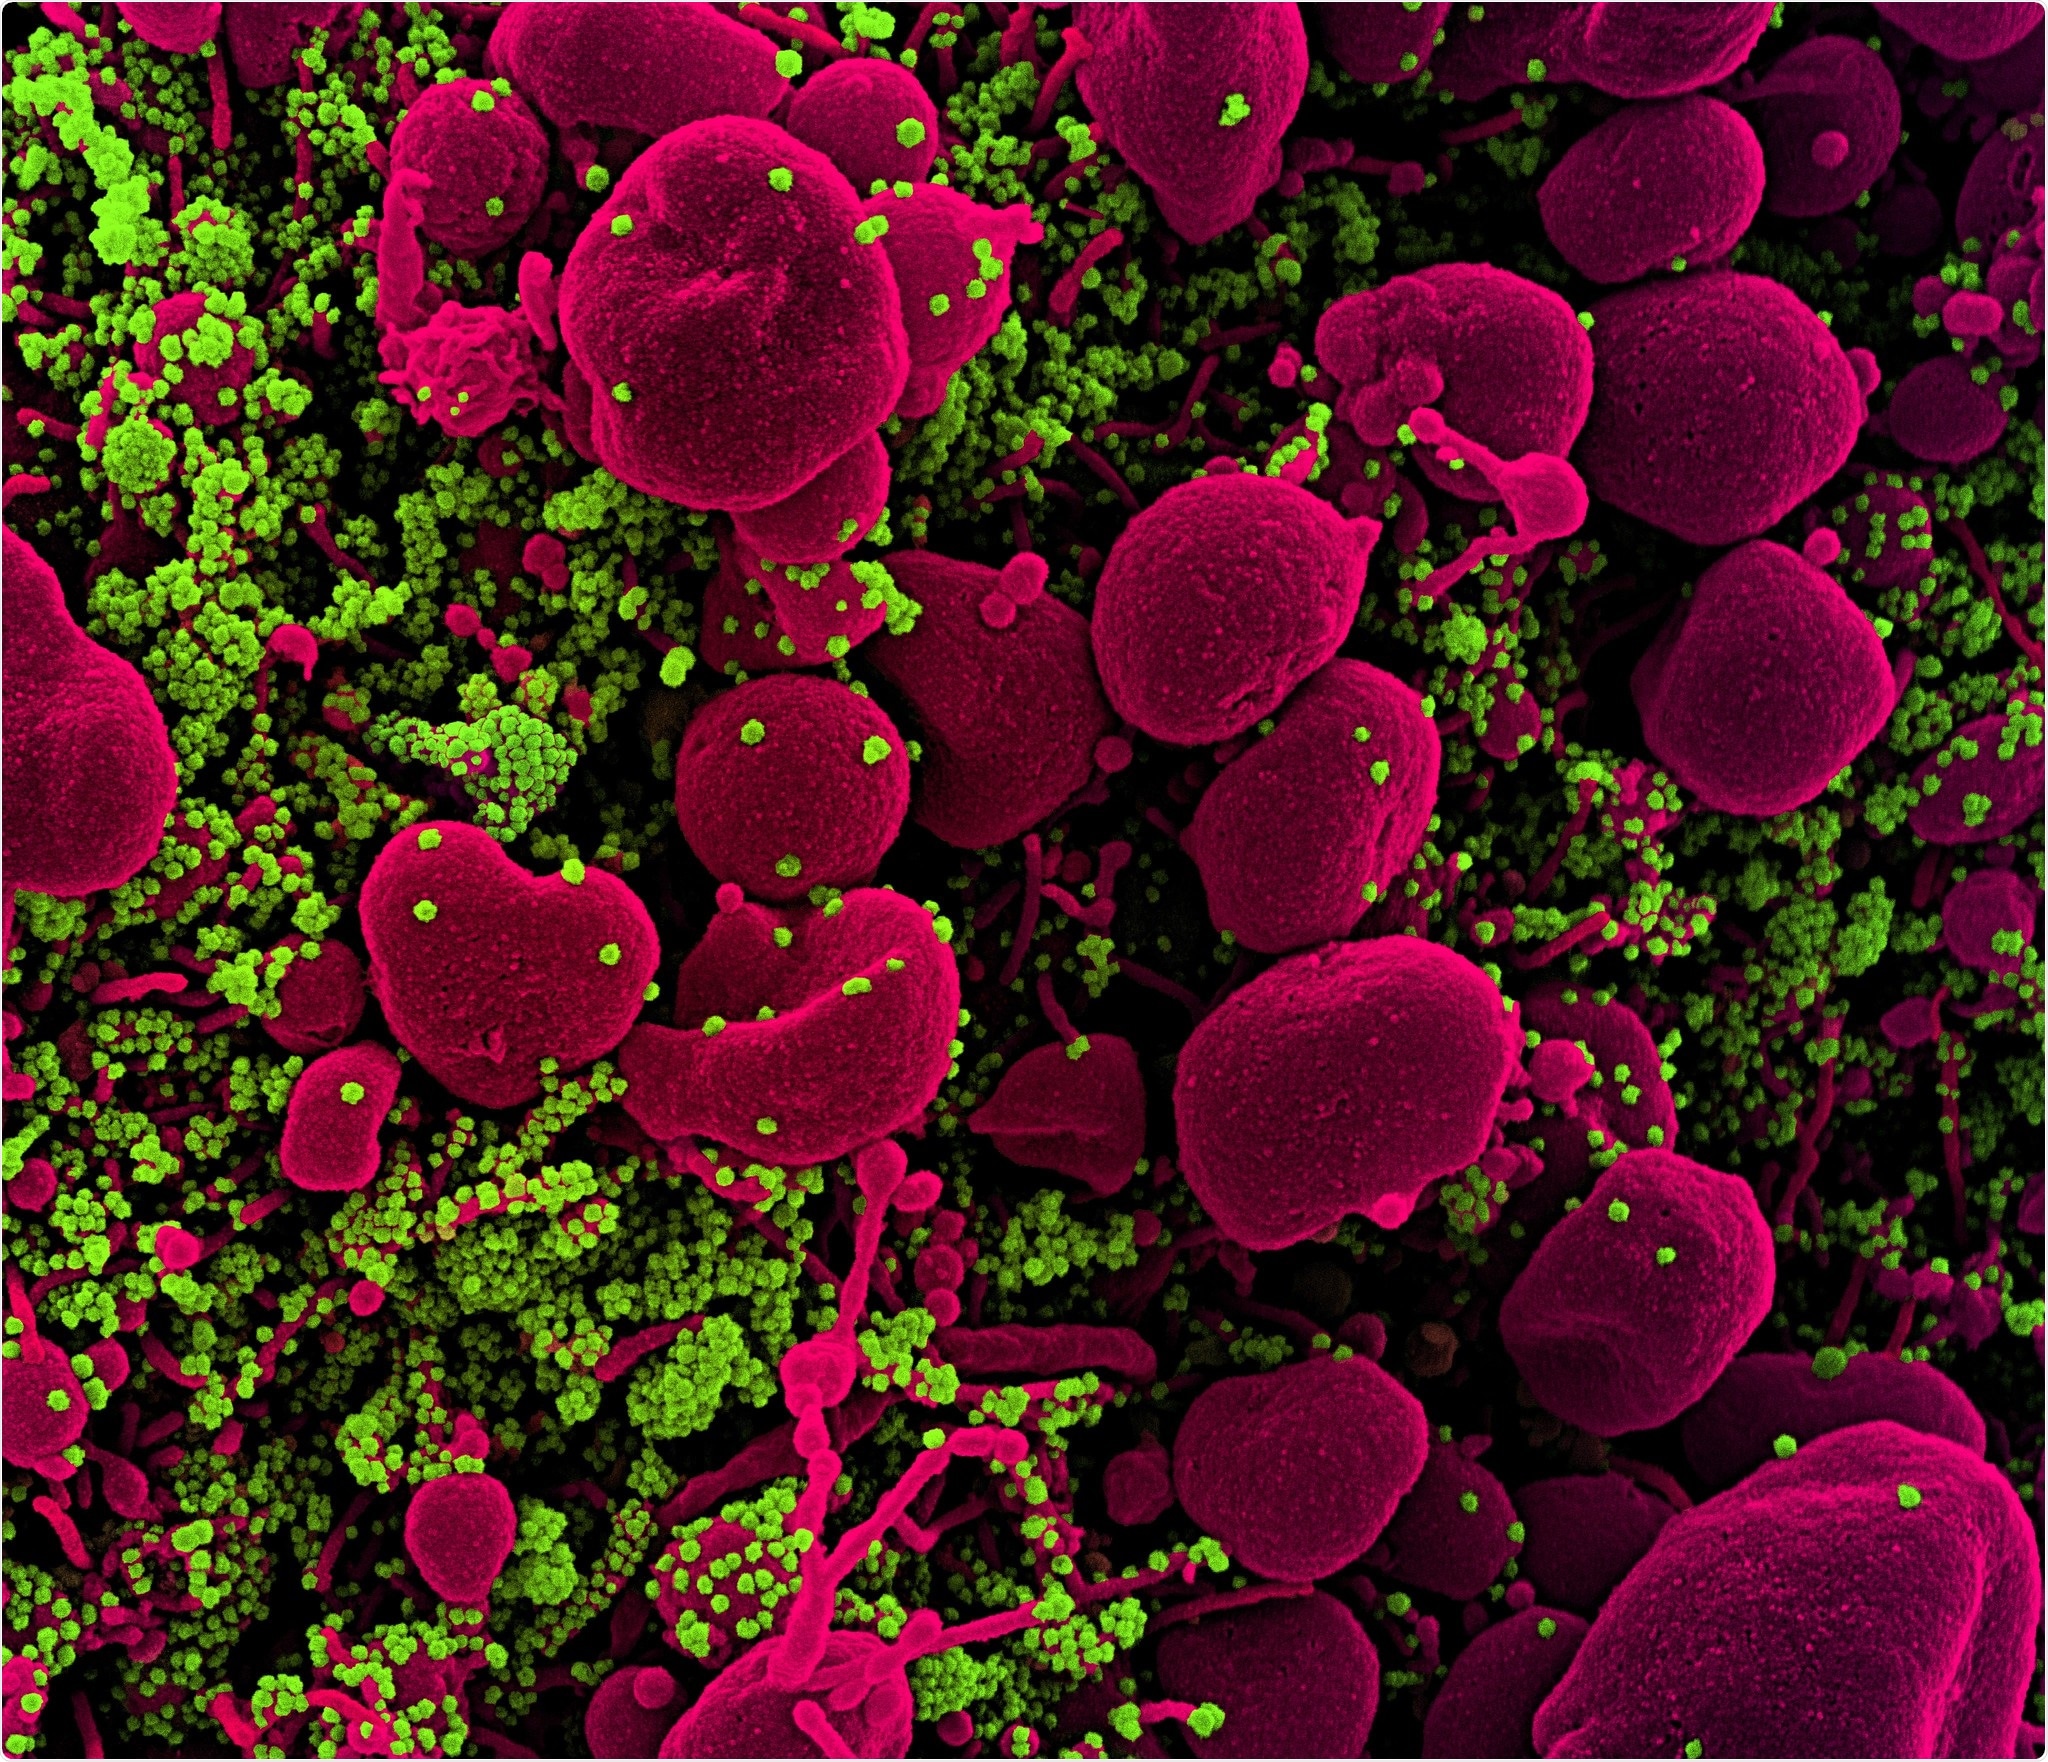 Micrográfo de electrón nuevo de la exploración de Coronavirus SARS-CoV-2 Colorized de una célula apoptotic (festonear) infectada pesado con las partículas del virus SARS-CoV-2 (verde), aisladas de una muestra paciente. La imagen capturada en el NIAID integró el centro de investigación en el fuerte Detrick, Maryland. Haber: NIAID